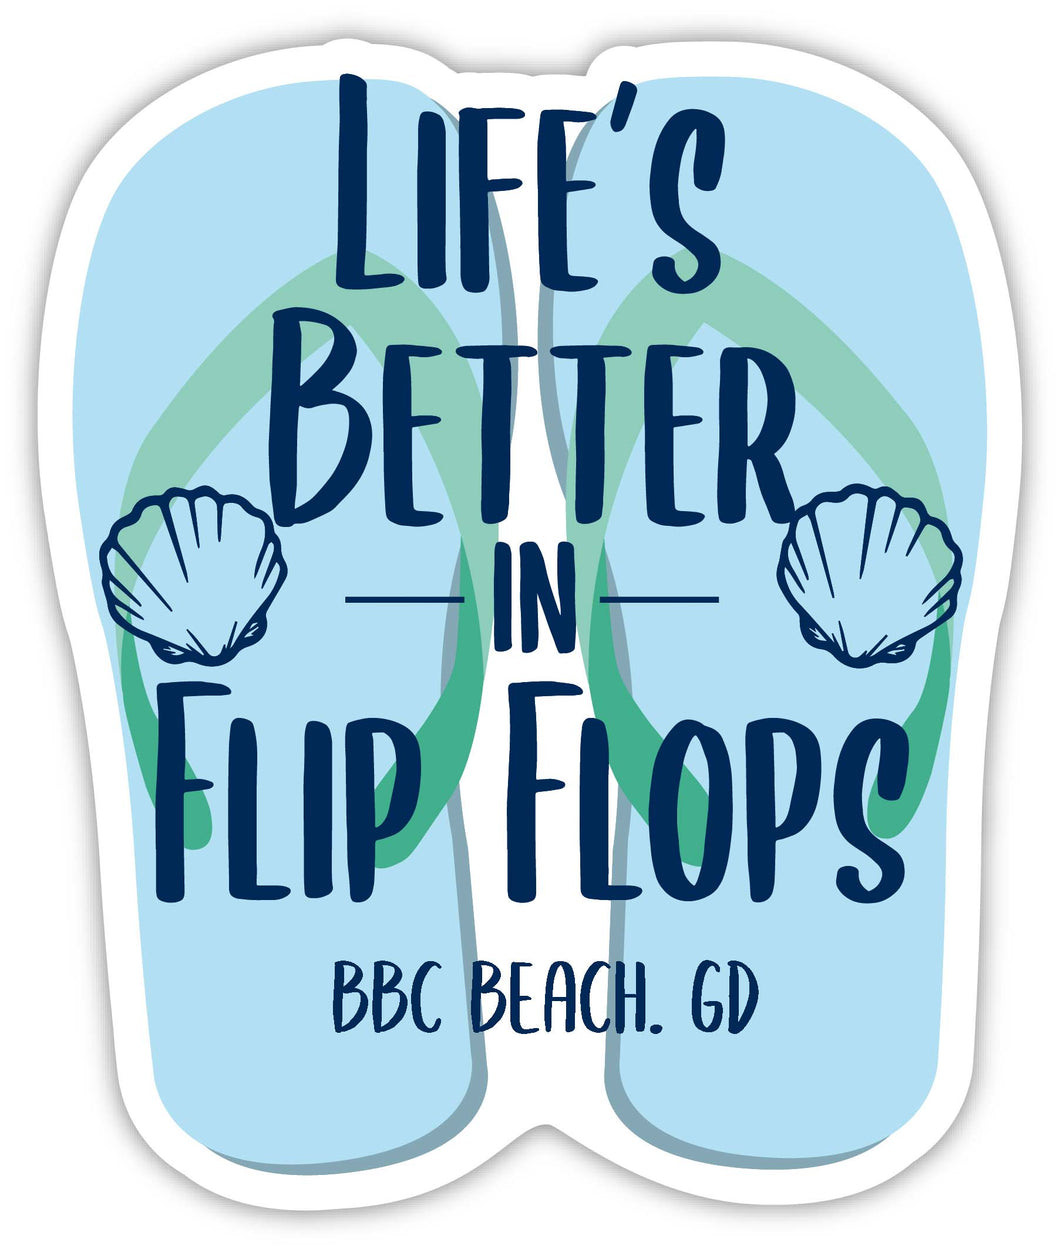 Bbc Beach Grenada Souvenir 4 Inch Vinyl Decal Sticker Flip Flop Design